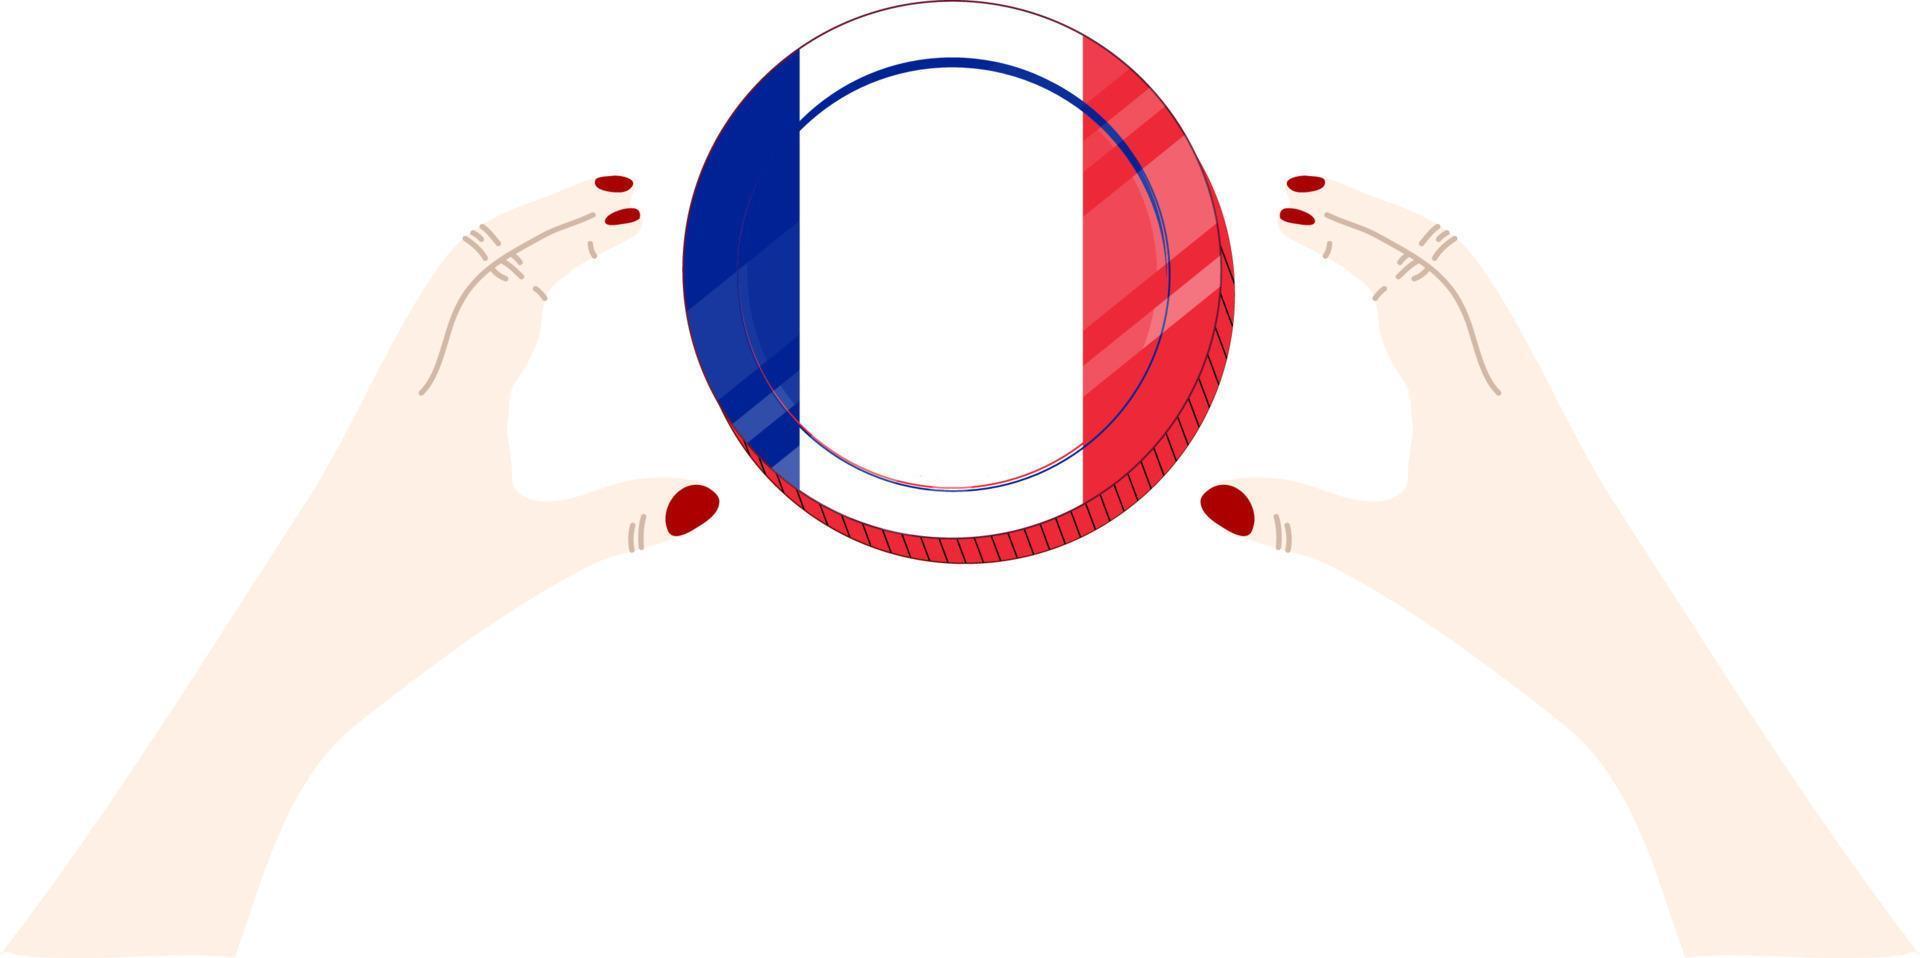 frankreich handgezeichnete nationalflagge, eur handgezeichnet vektor